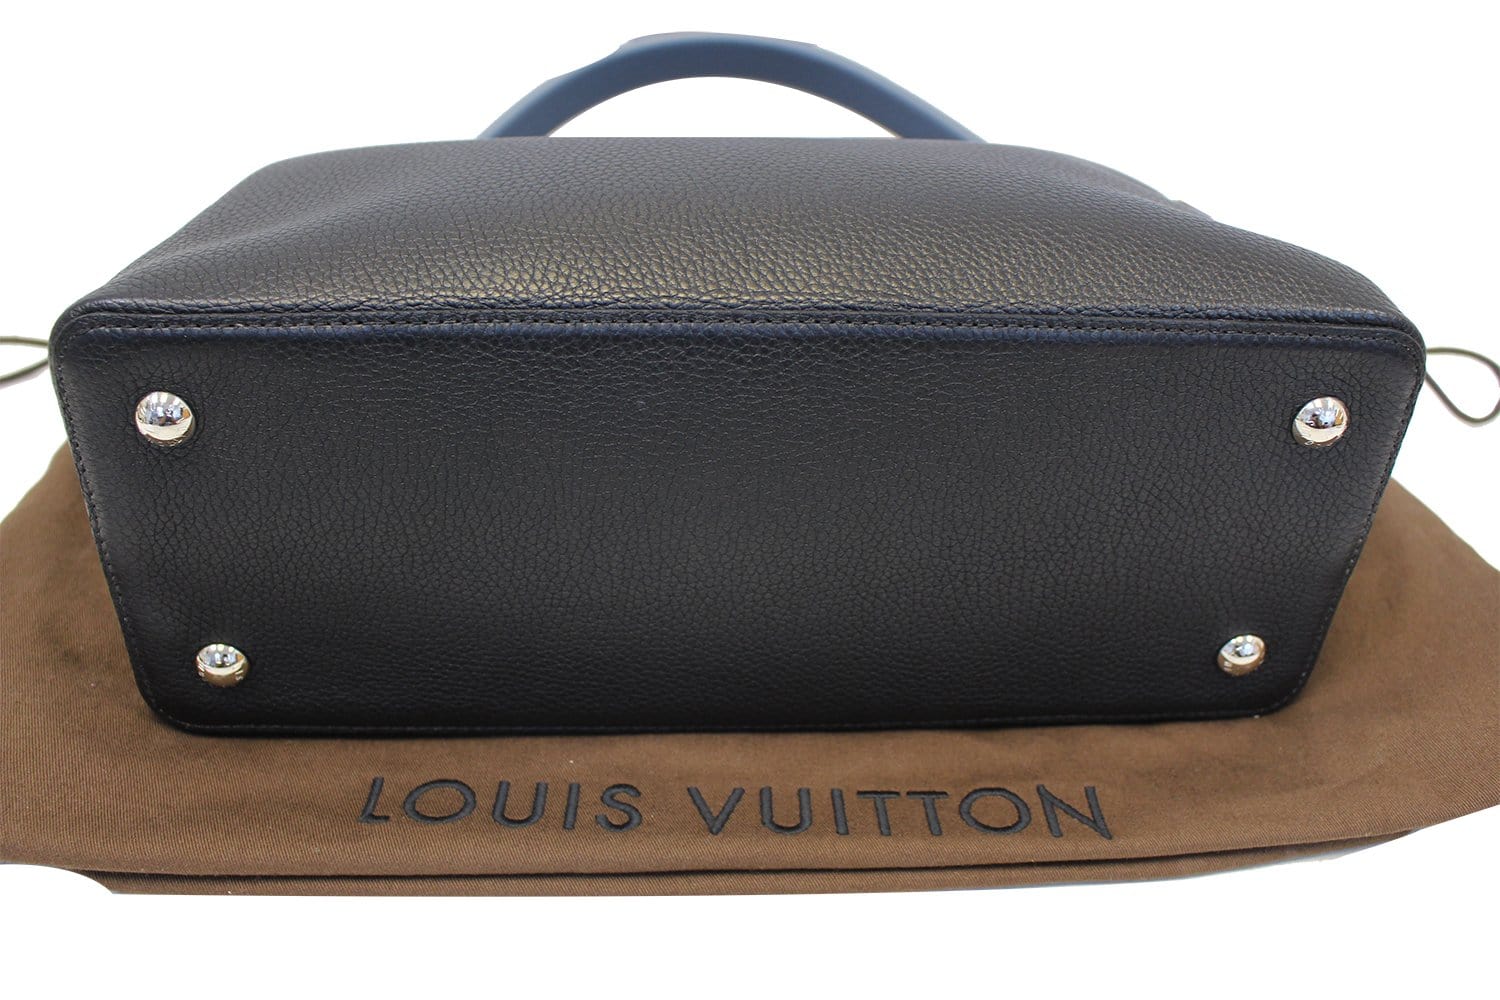 LOUIS VUITTON Navy Blue Taurillon Leather Capucines MM Bag TT2126